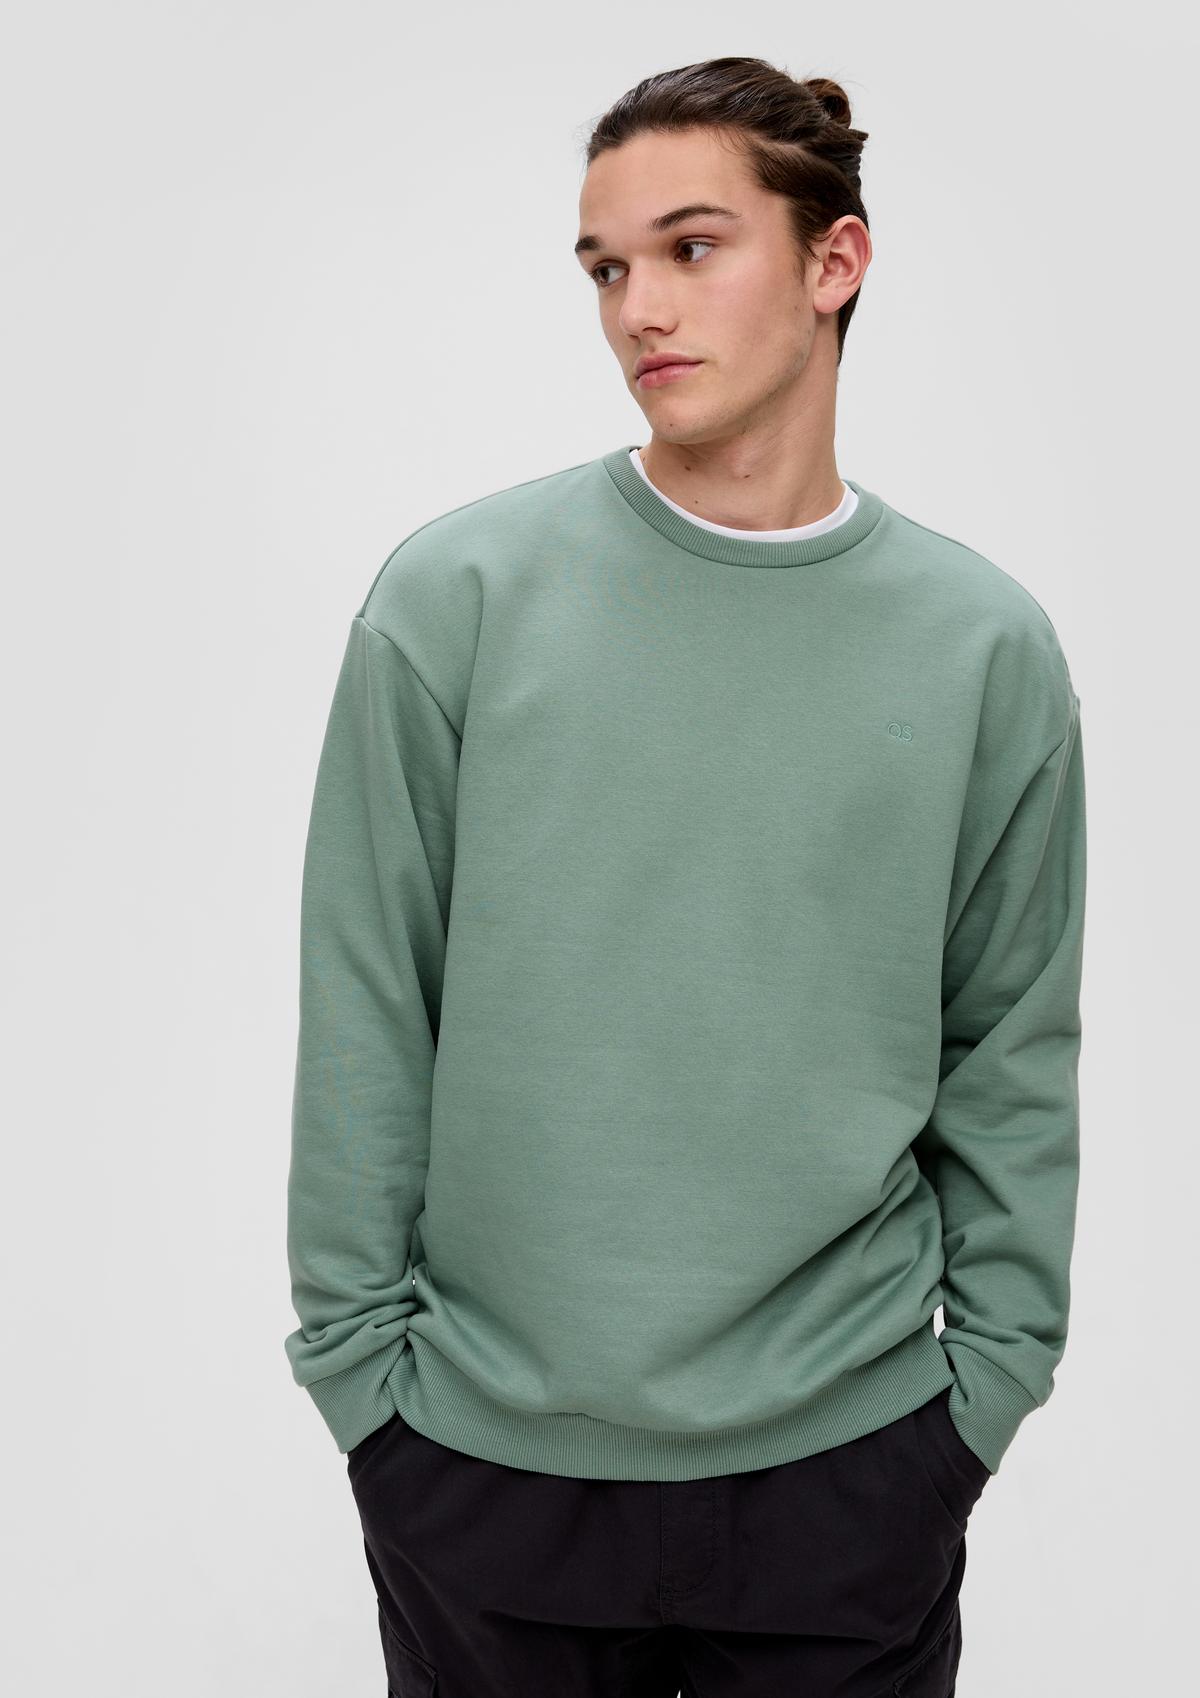 Sweatshirts & Hoodies for Men